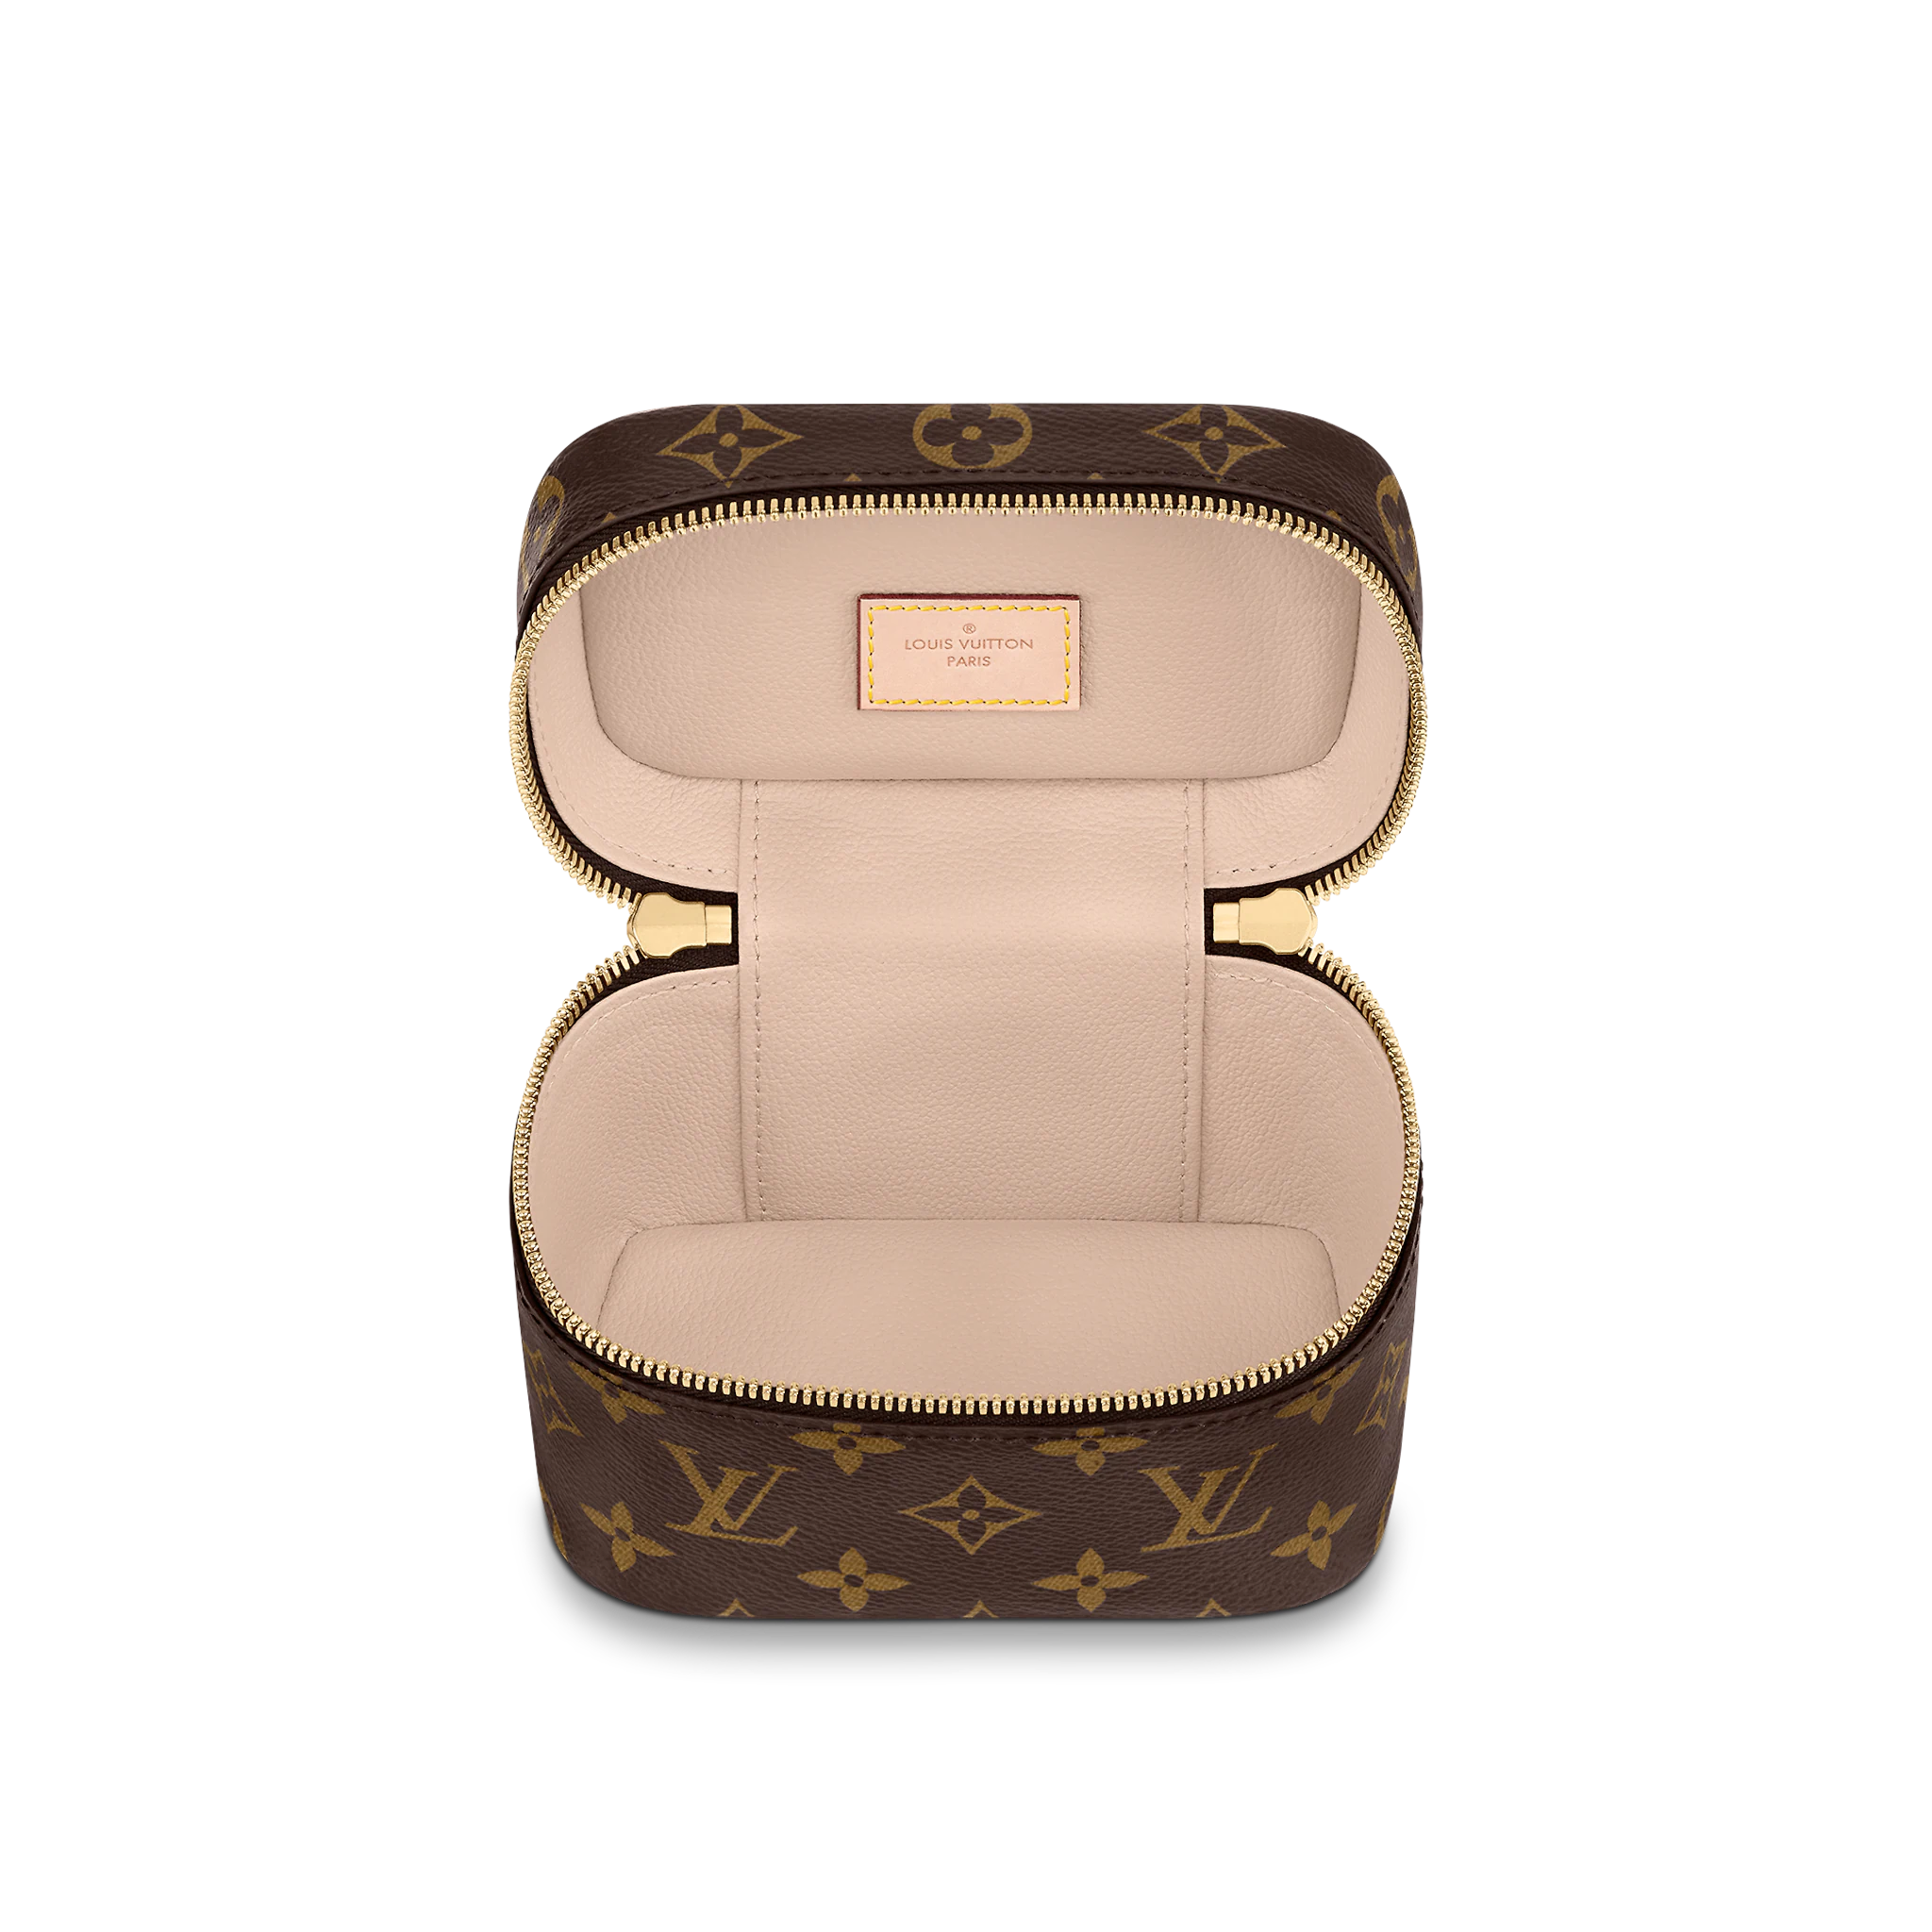 Supreme X Louis Vuitton Airpods Case  cescledubr